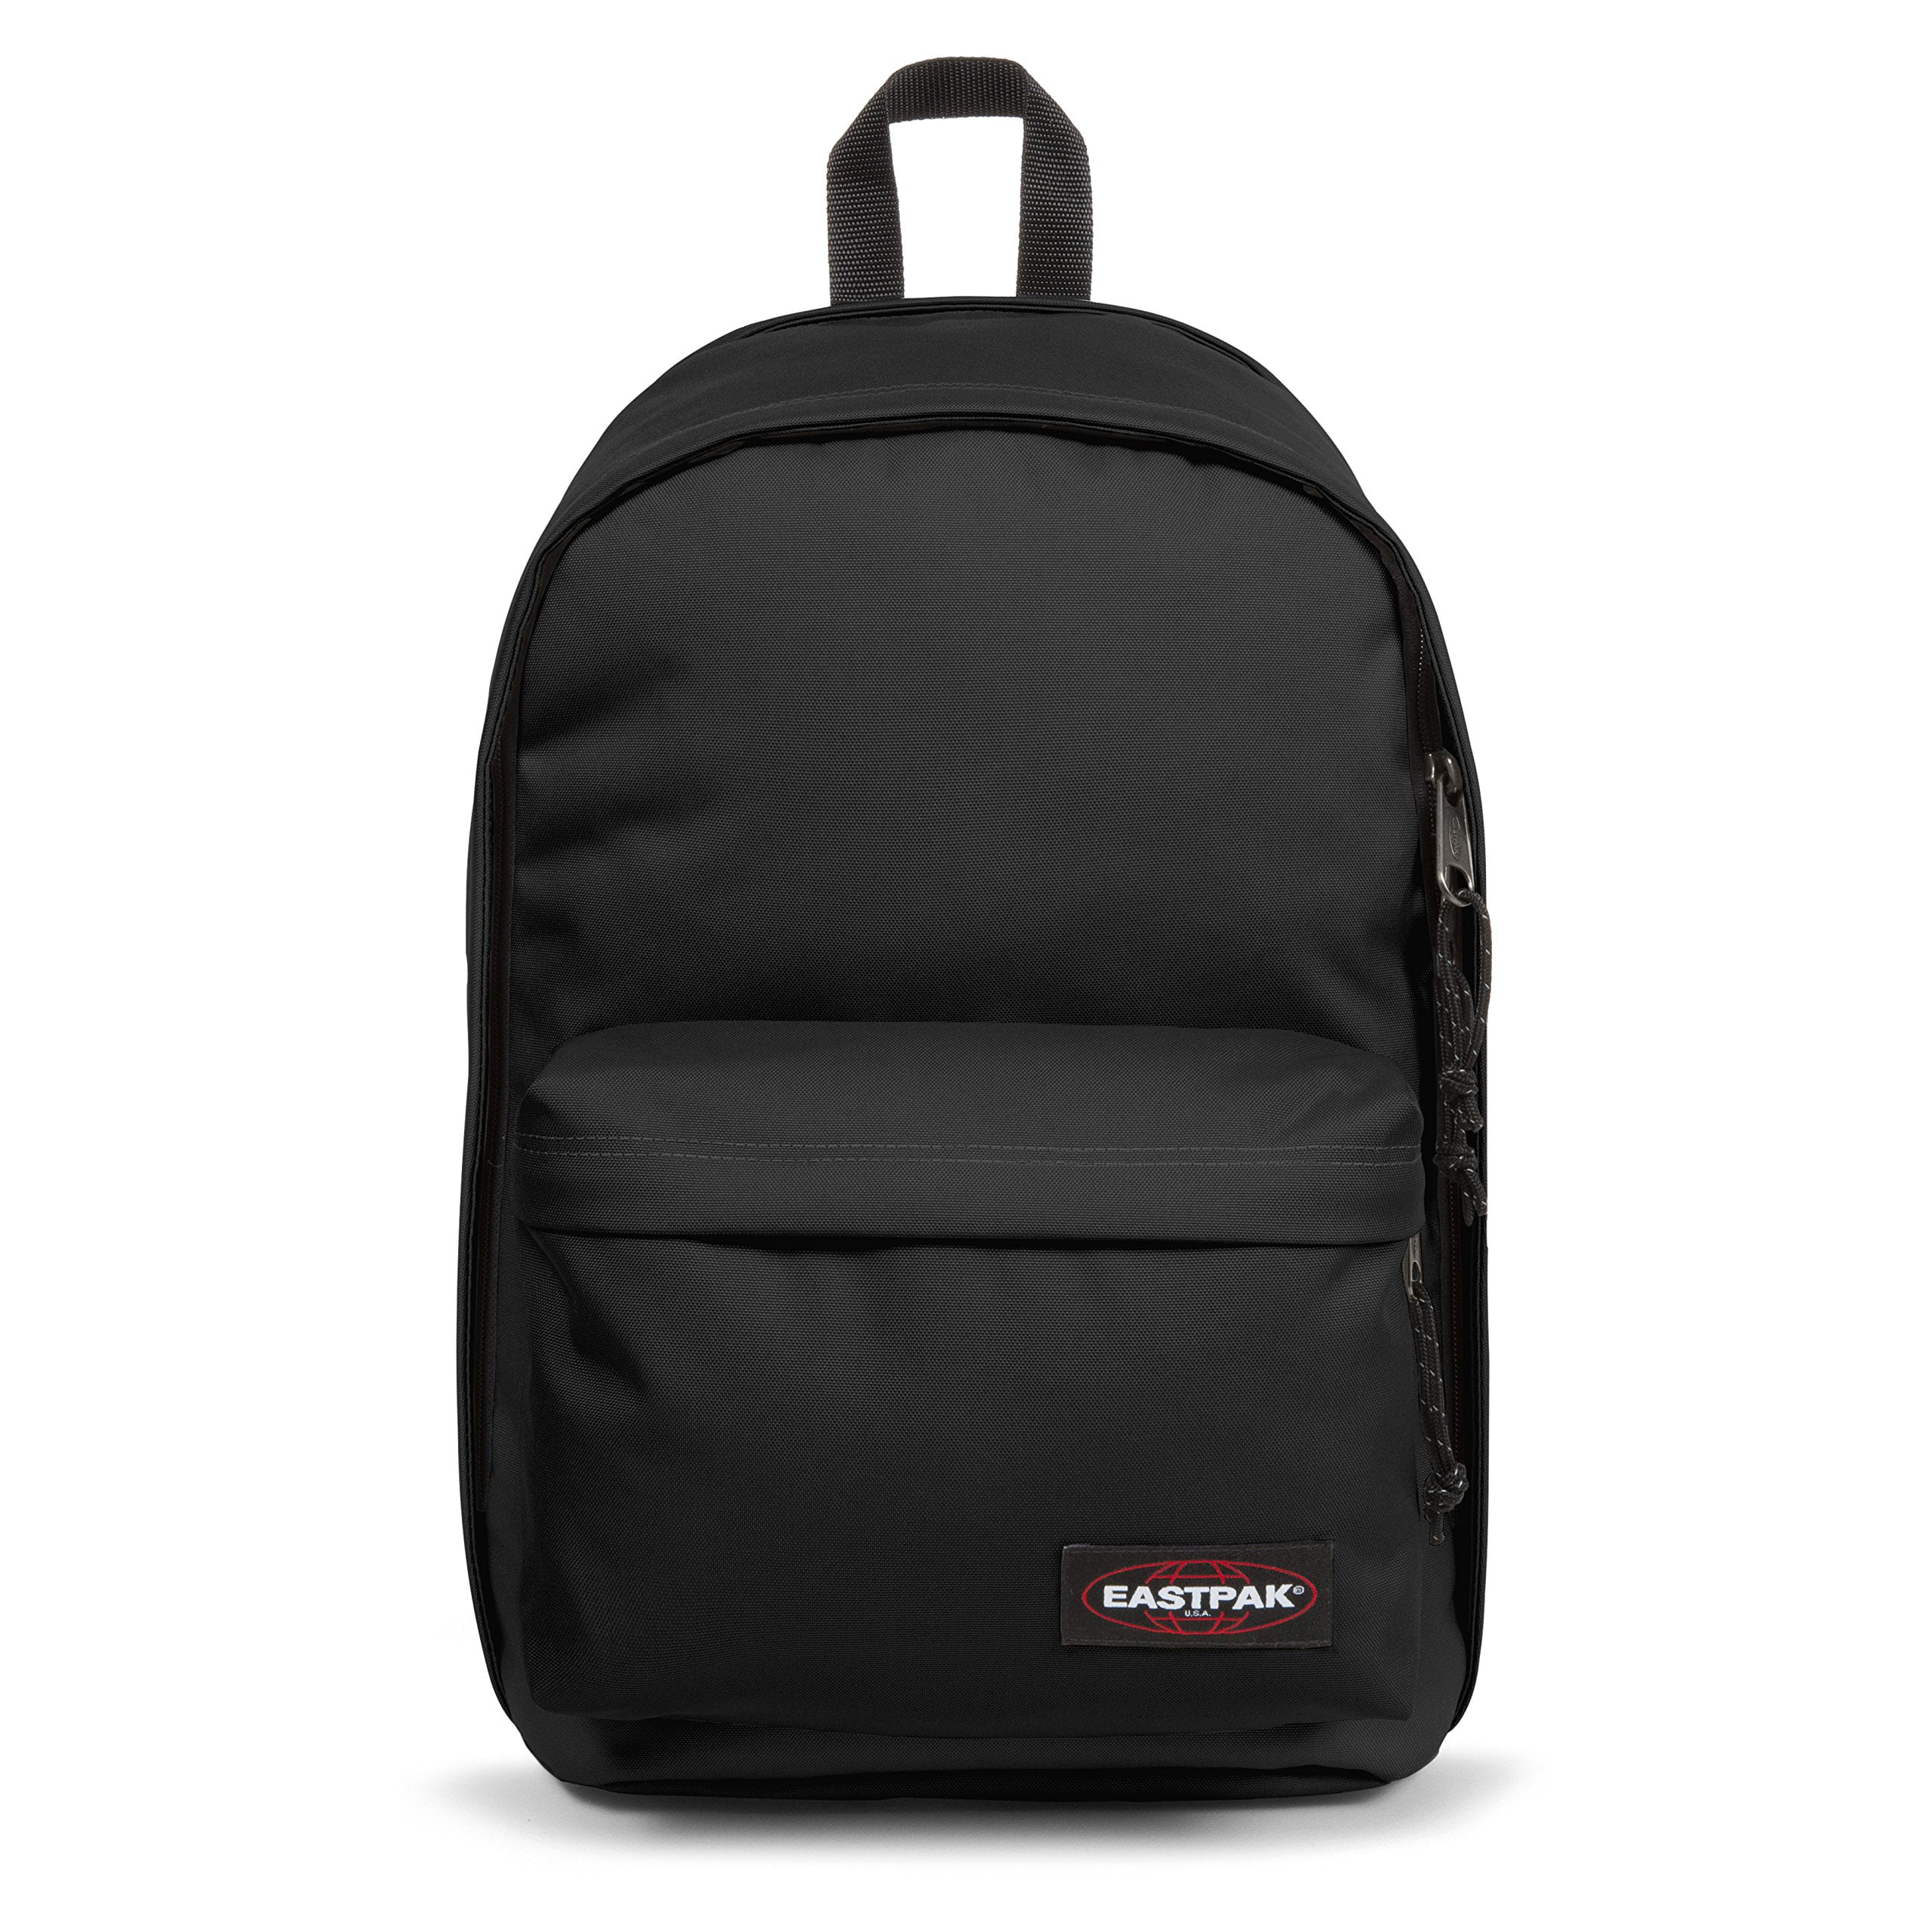 Eastpak Back To Work Backpack - Walmart.com